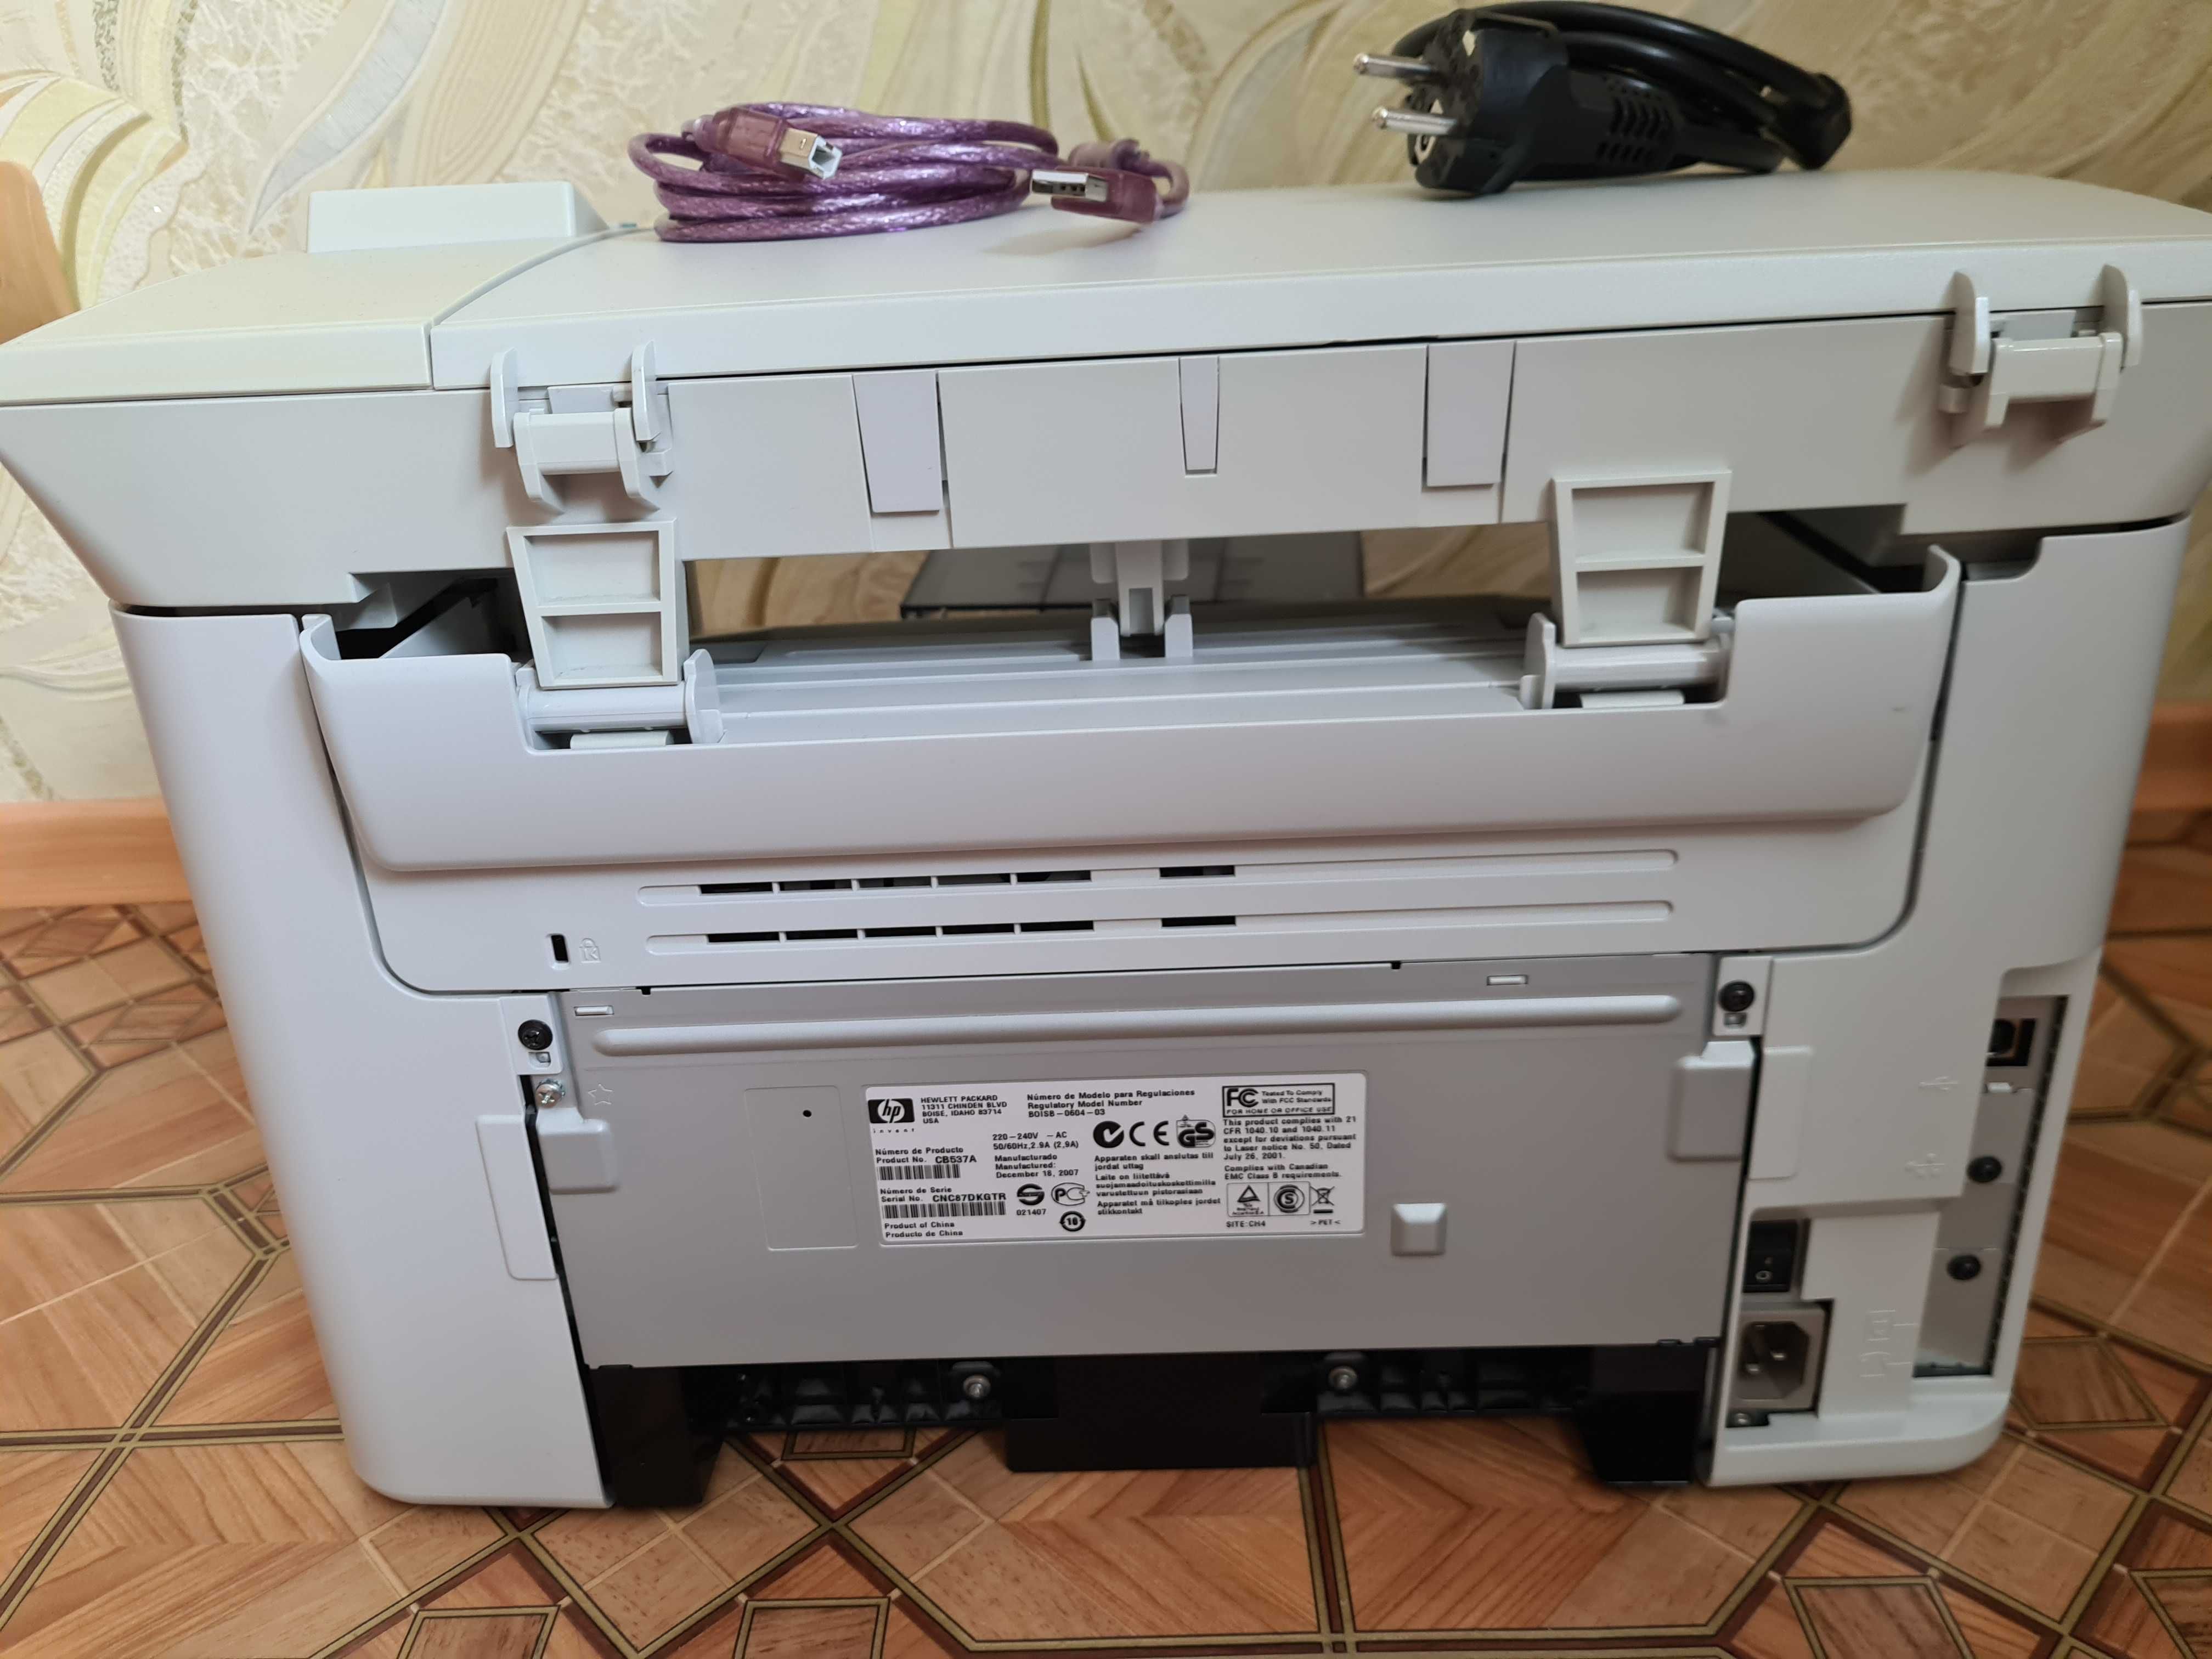 МФУ HP LaserJet M1120 принтер сканер копир